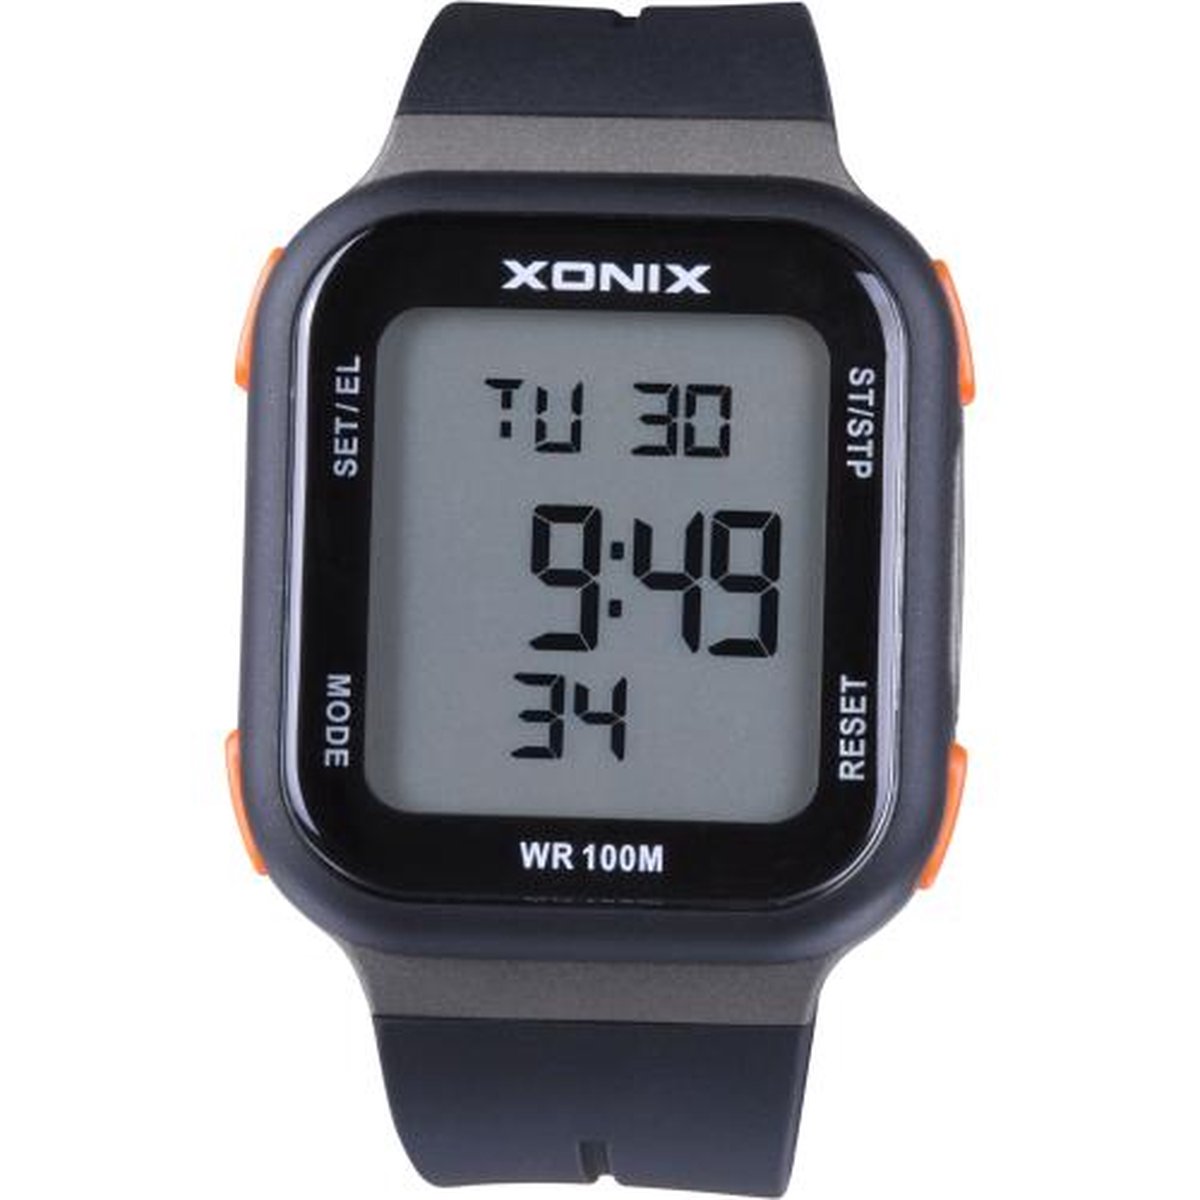 Xonix ZAA-004 - Horloge - Digitaal - Heren - Mannen - Rechthoek - Siliconen band - ABS - Cijfers - Achtergrondverlichting - Stappenteller - Temperatuur - Alarm - Start-Stop - Chronograaf - Waterdicht - 10 ATM - Zwart - Grijs - Oranje